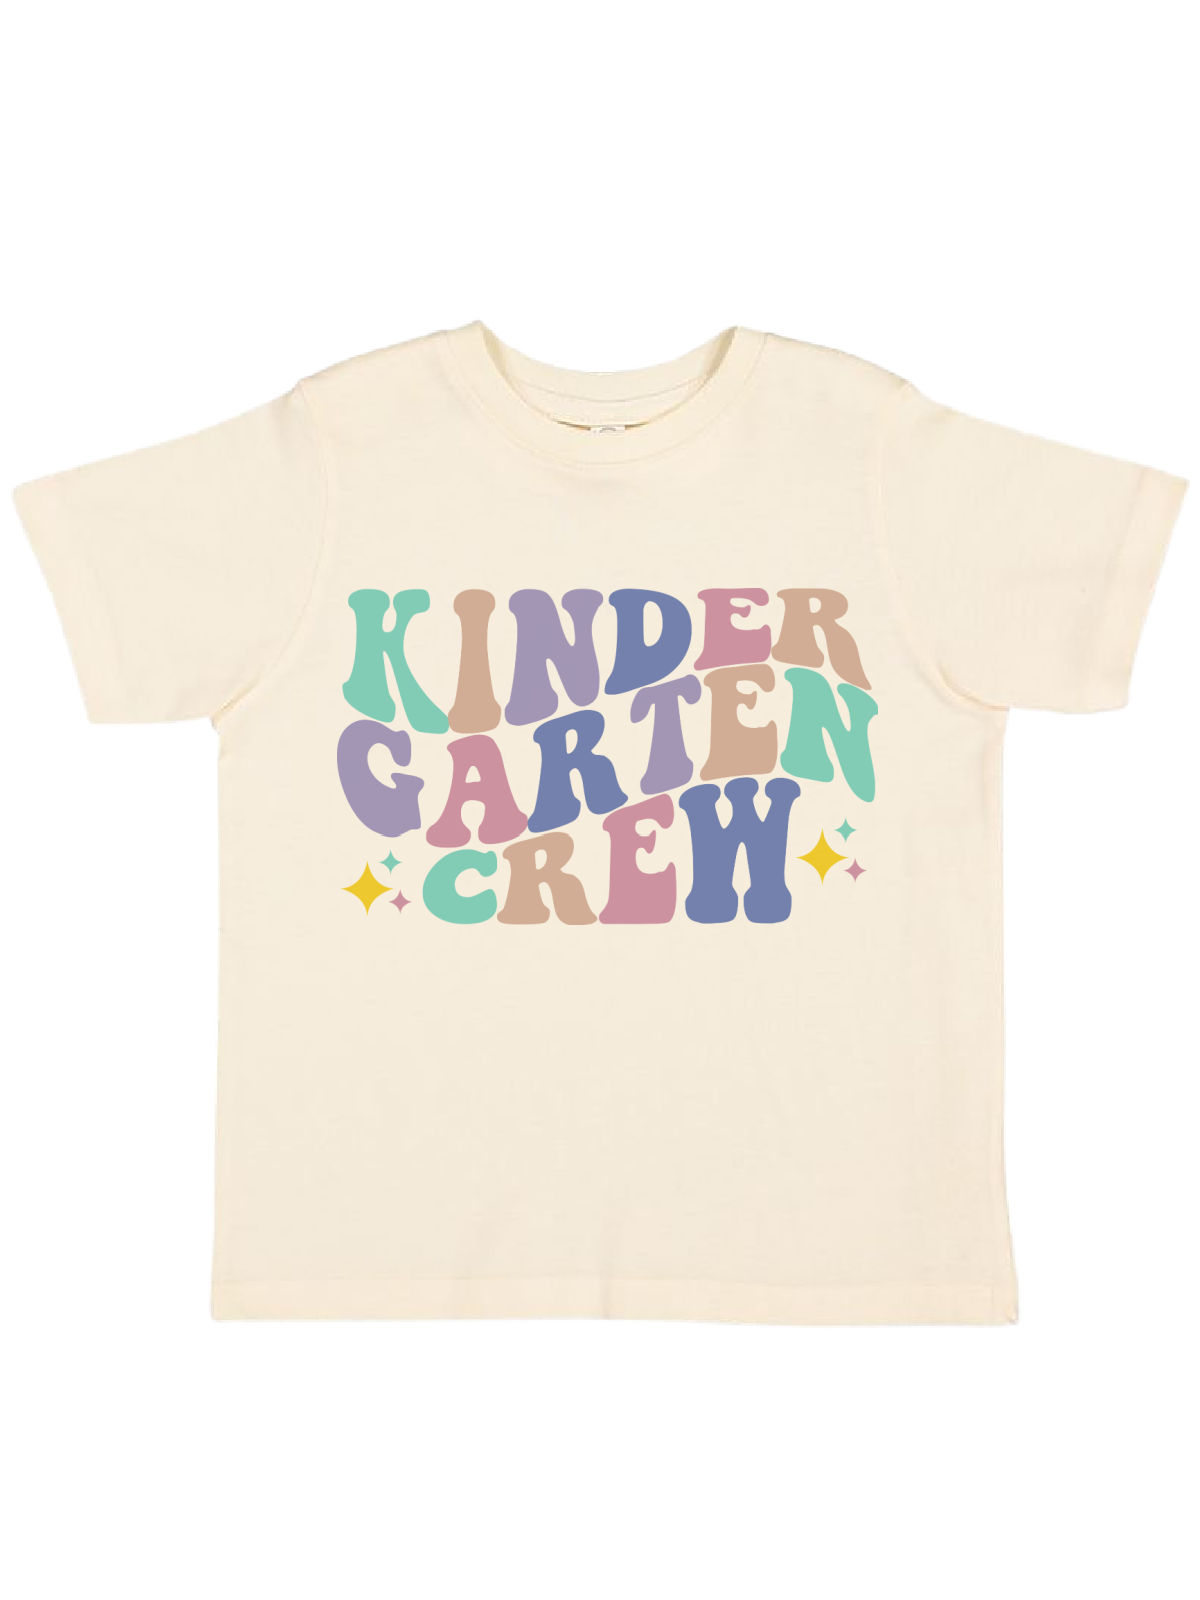 Kindergarten Crew Kids Retro Back to School Shirt